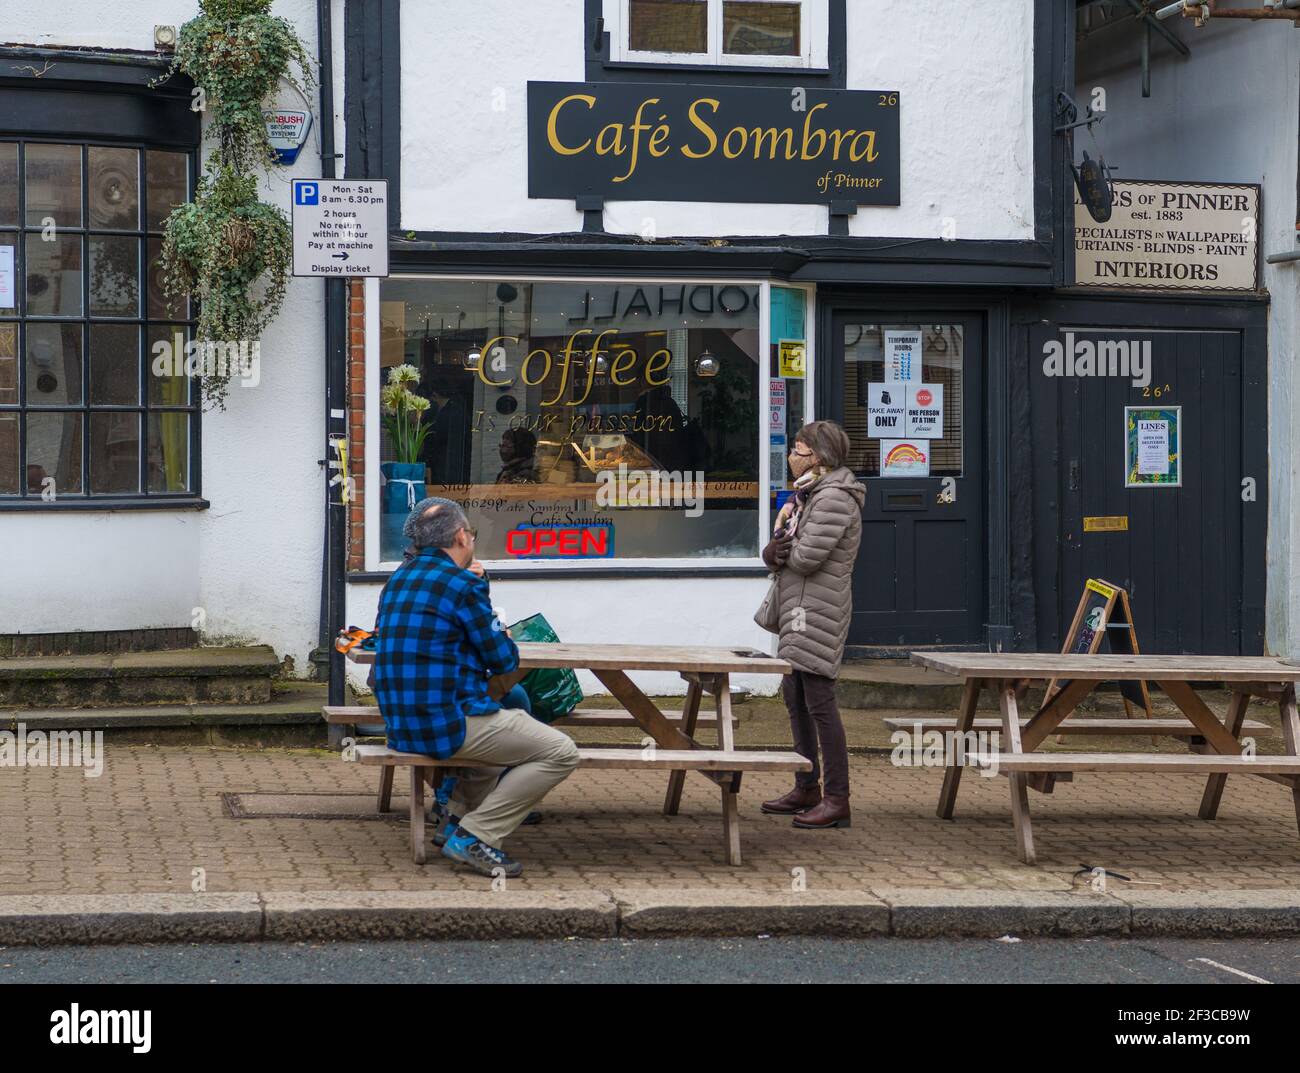 Un couple assis à une table de trottoir en conversation avec une femme debout portant un masque facial à l'extérieur du café Sombra, High Street, Pinner. Banque D'Images